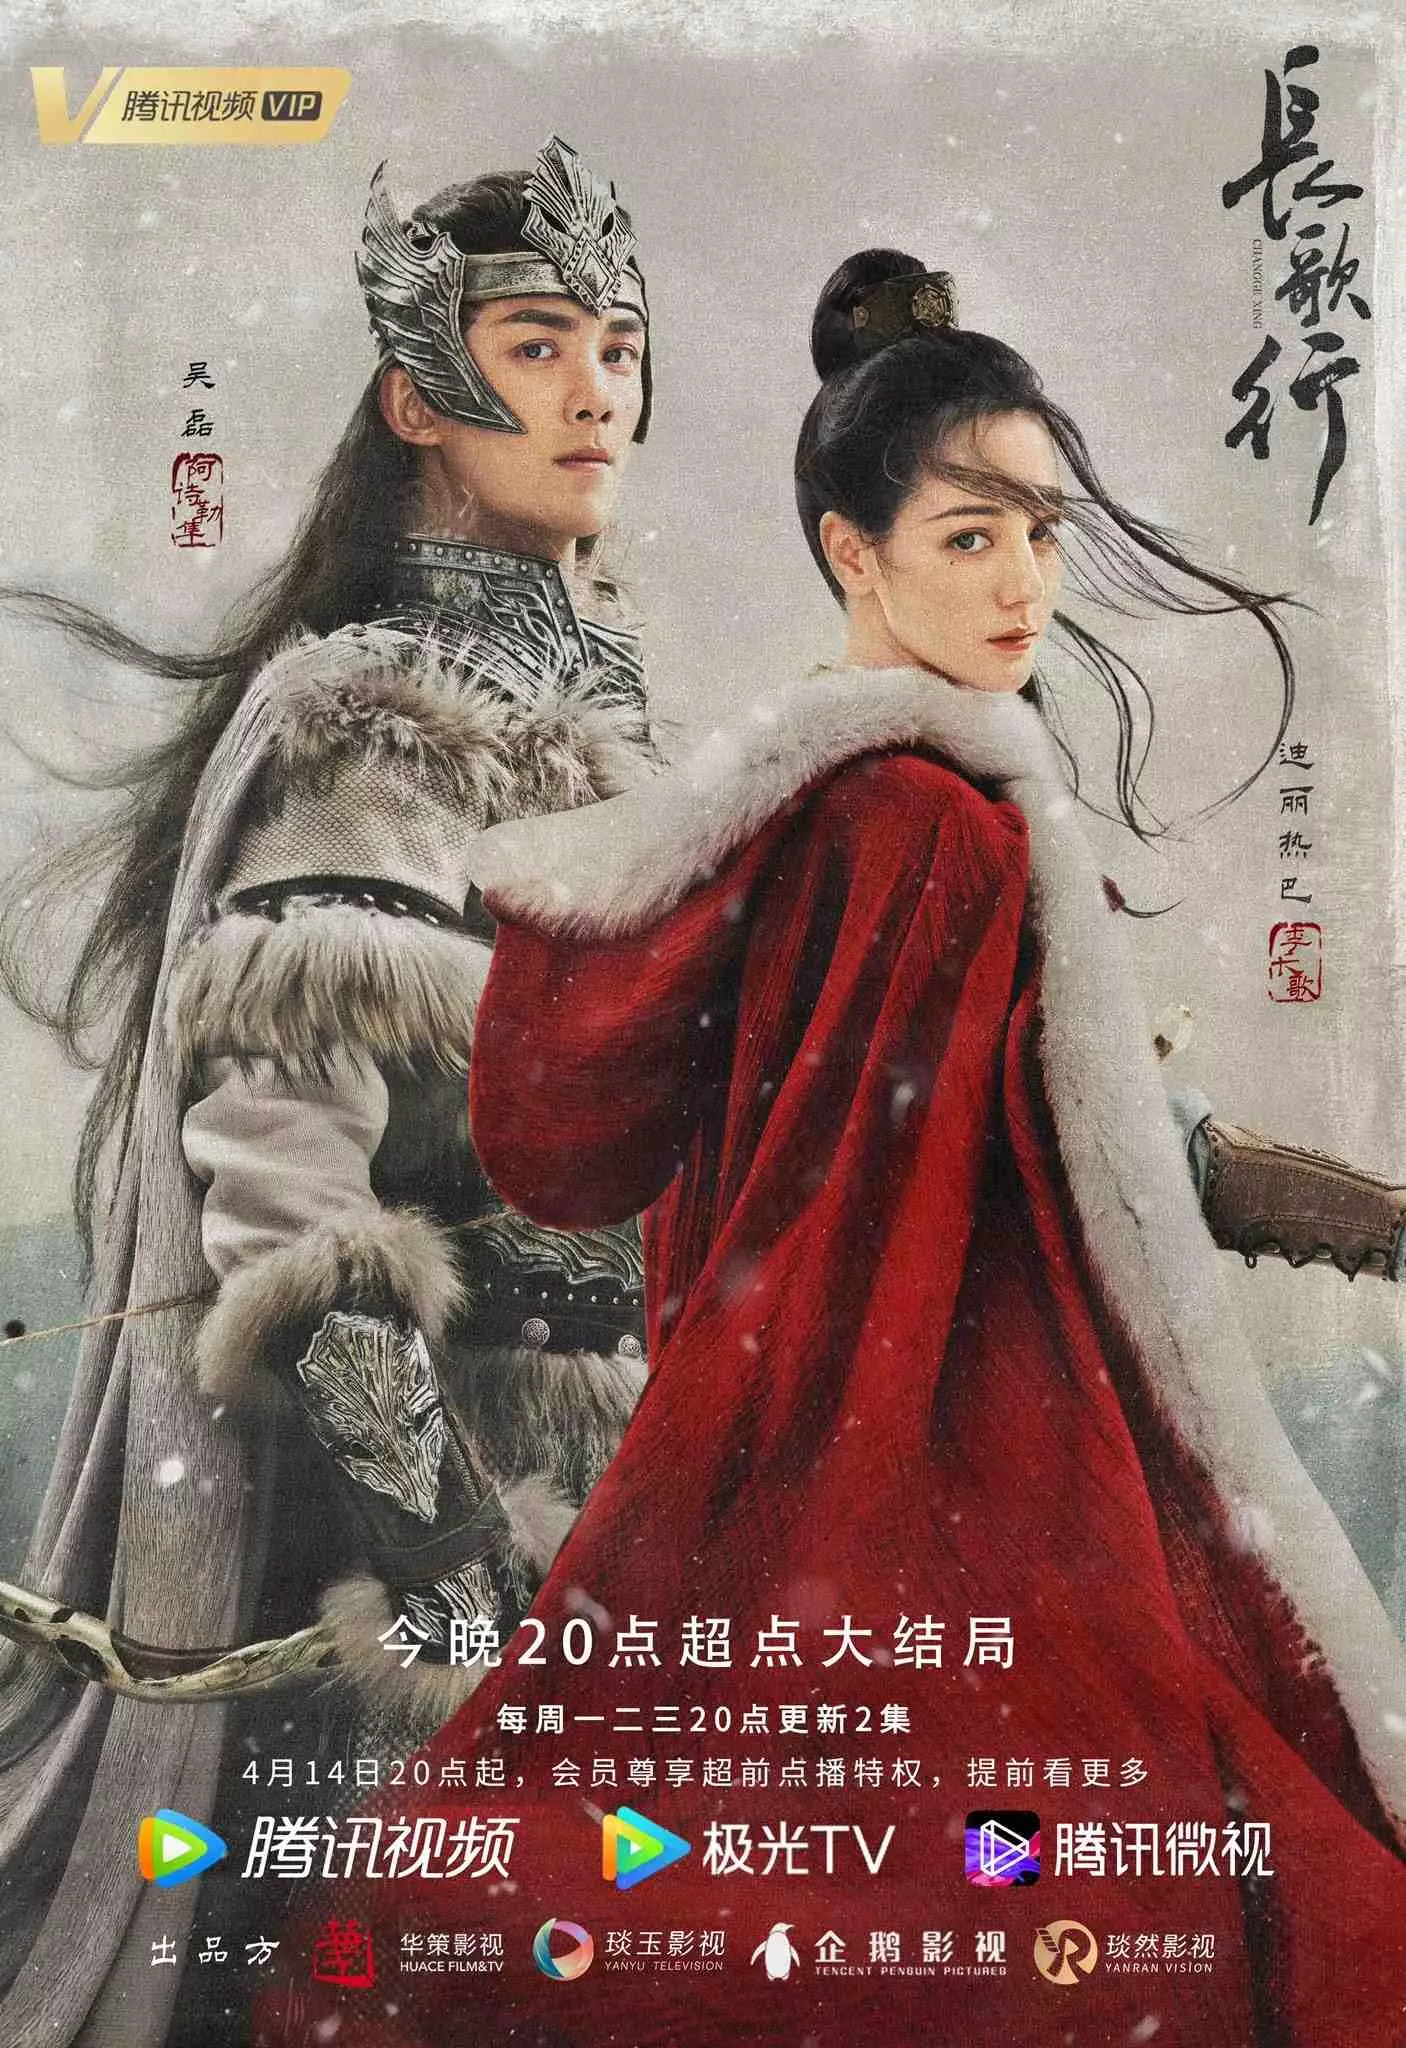 갑옷을 입은 오뢰와 망토를 두른 디리러바, 중국드라마 장가행 포스터